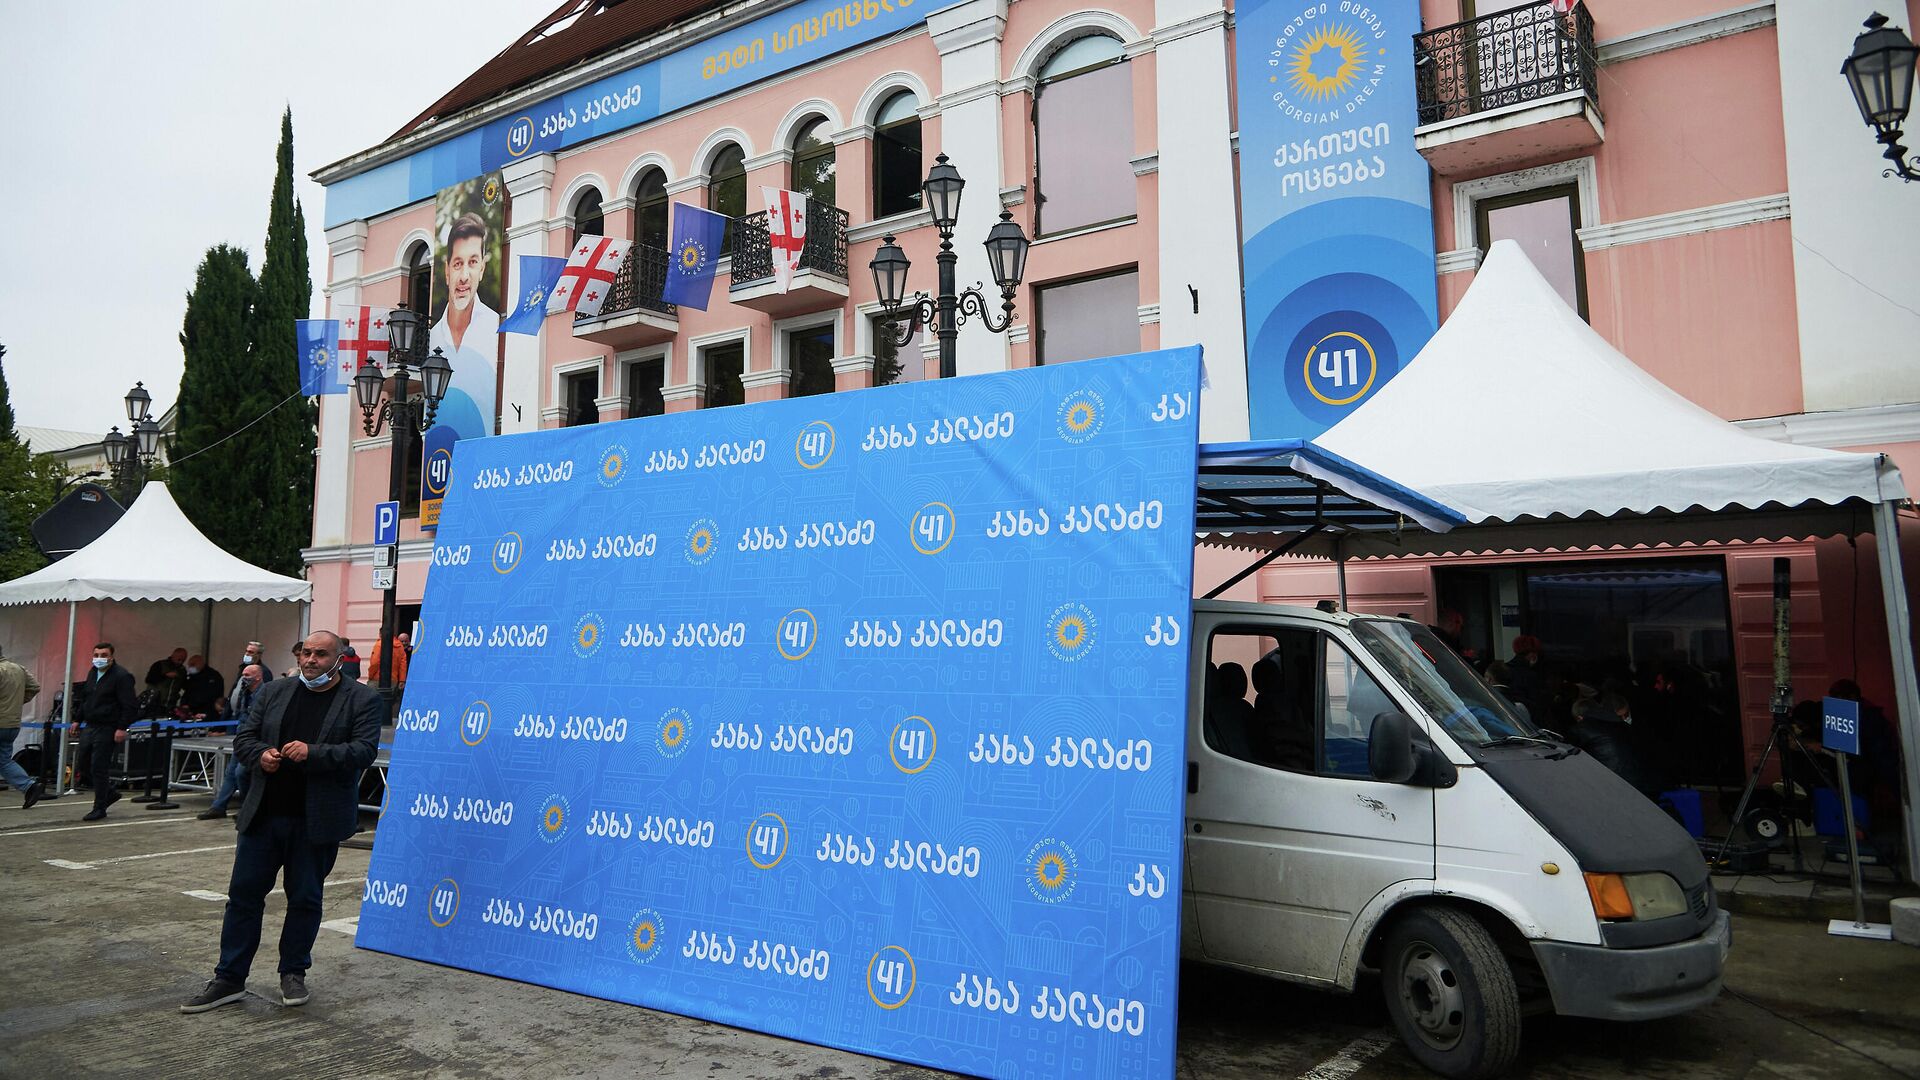 Предвыборная реклама - баннеры на фасаде главного офиса партии Грузинская мечта - Sputnik Грузия, 1920, 01.07.2022